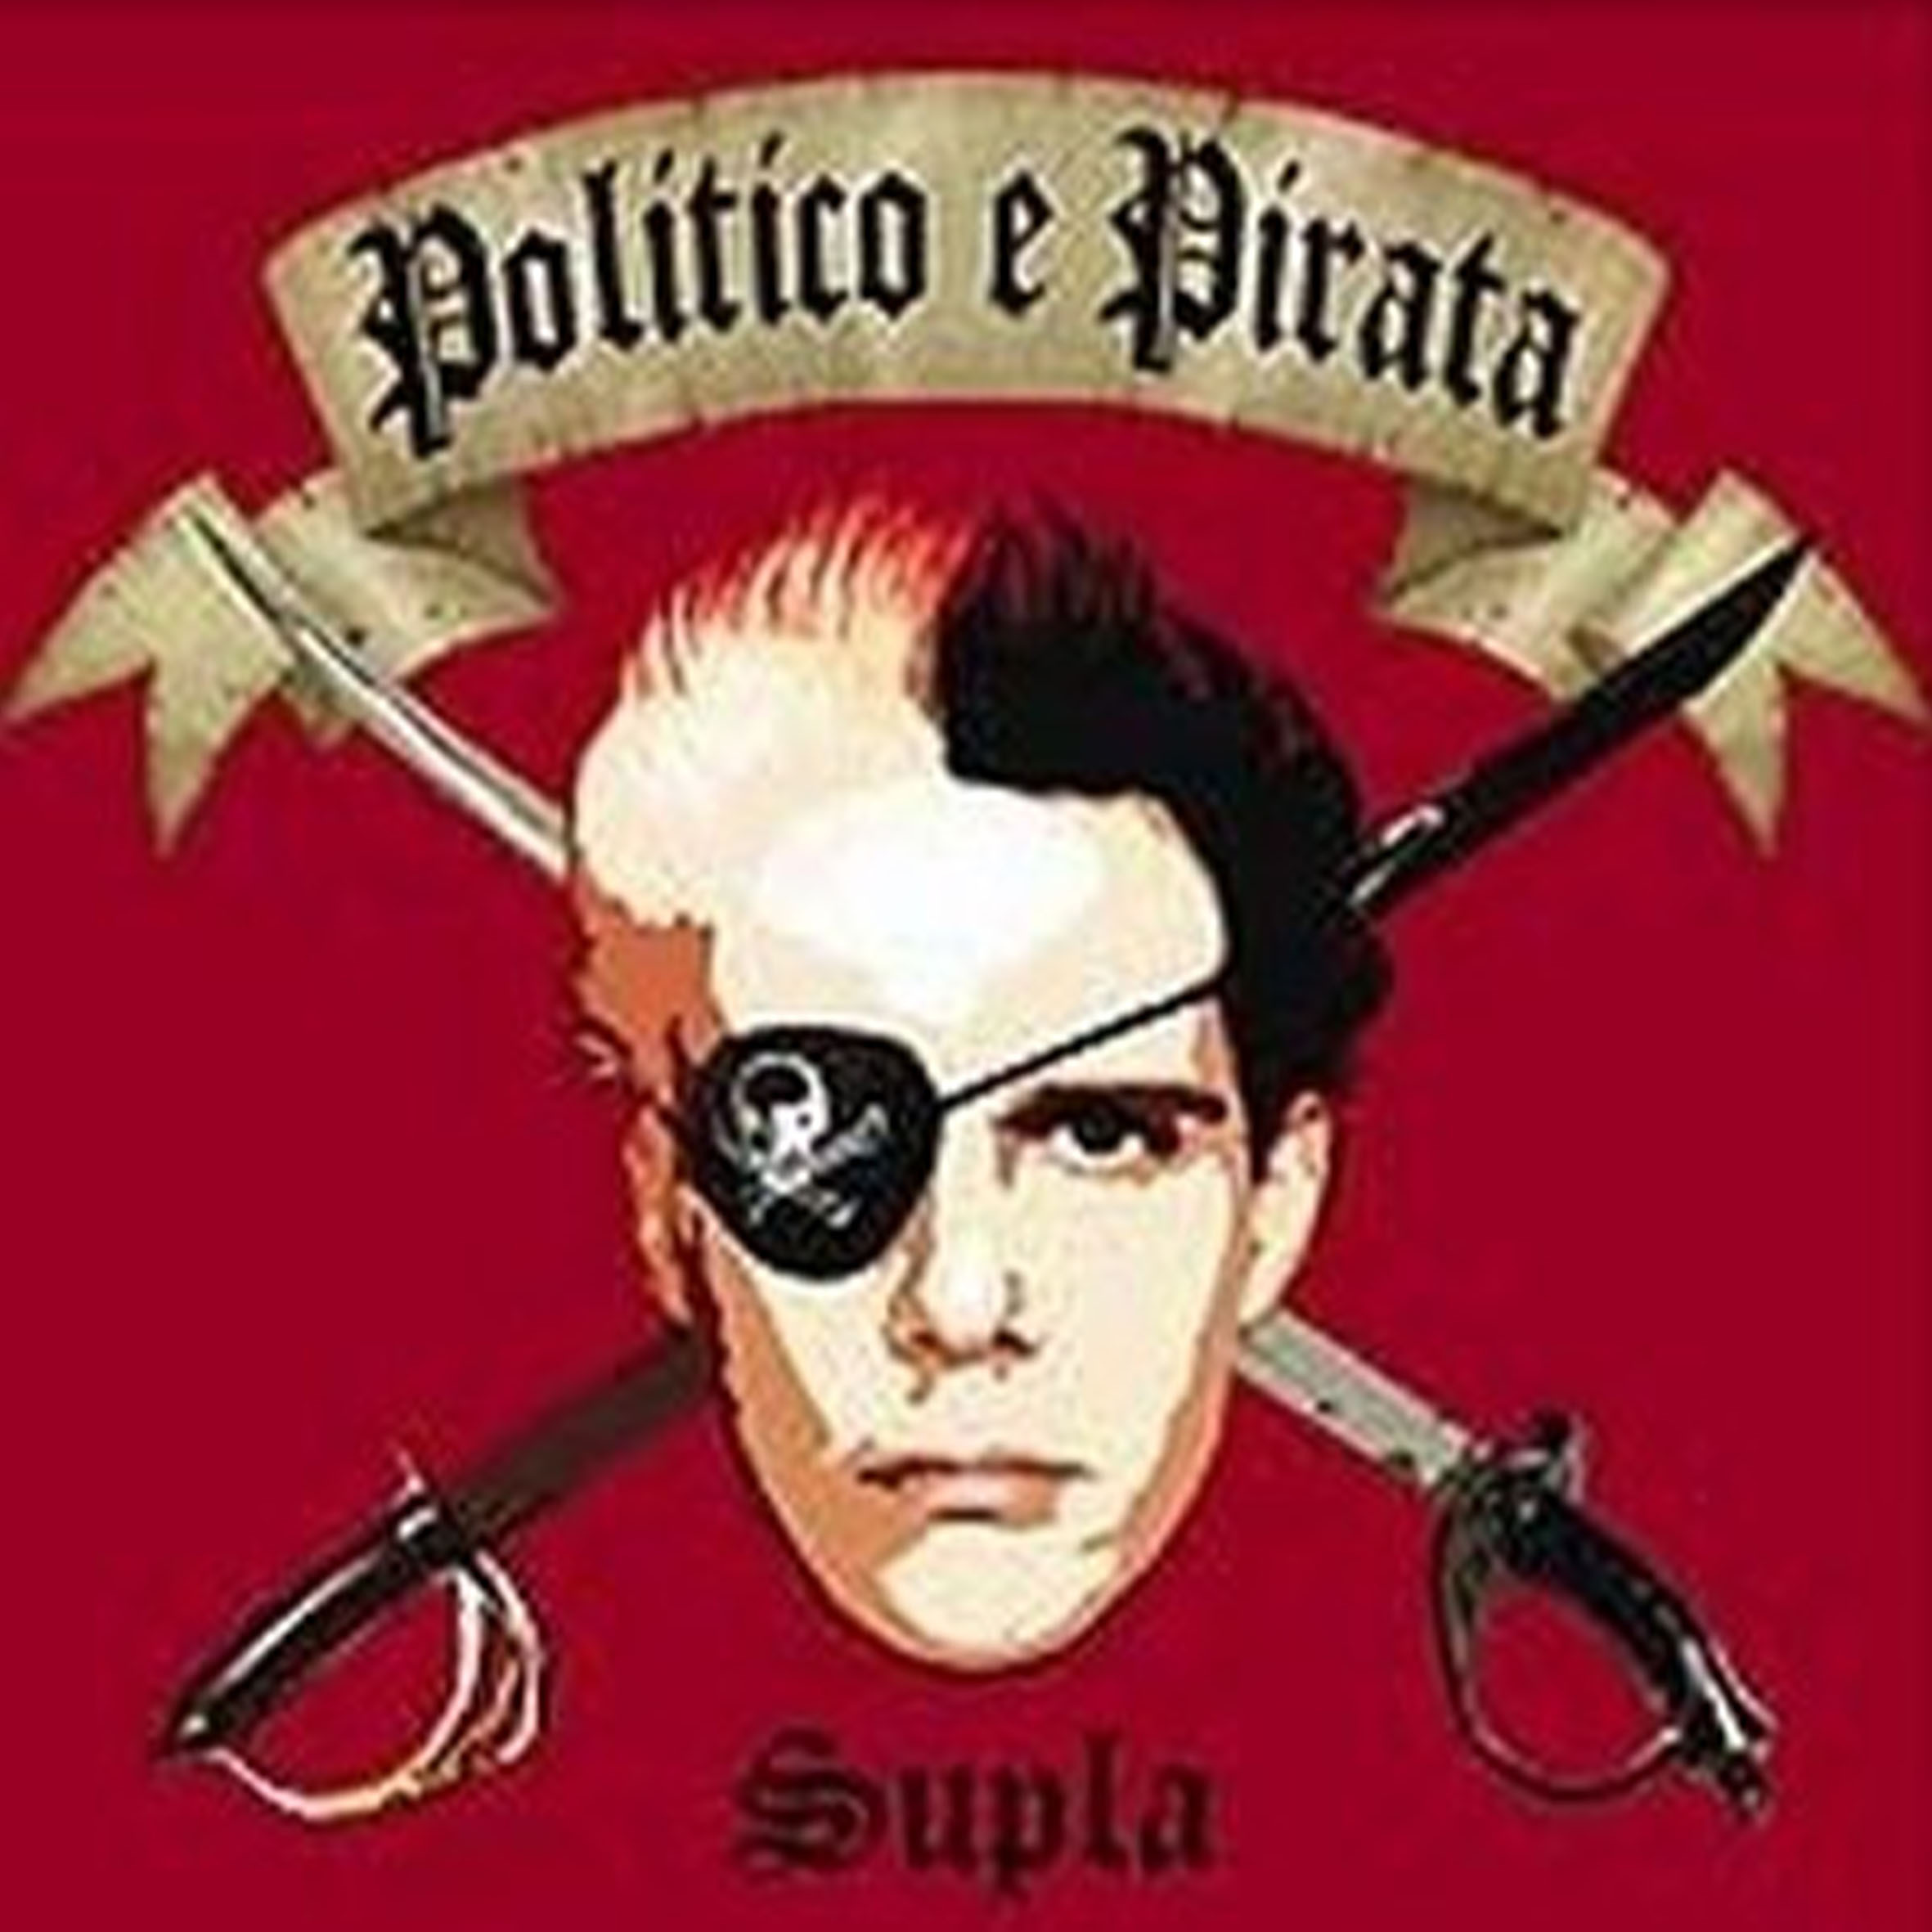 CD - Supla - Politico e Pirata